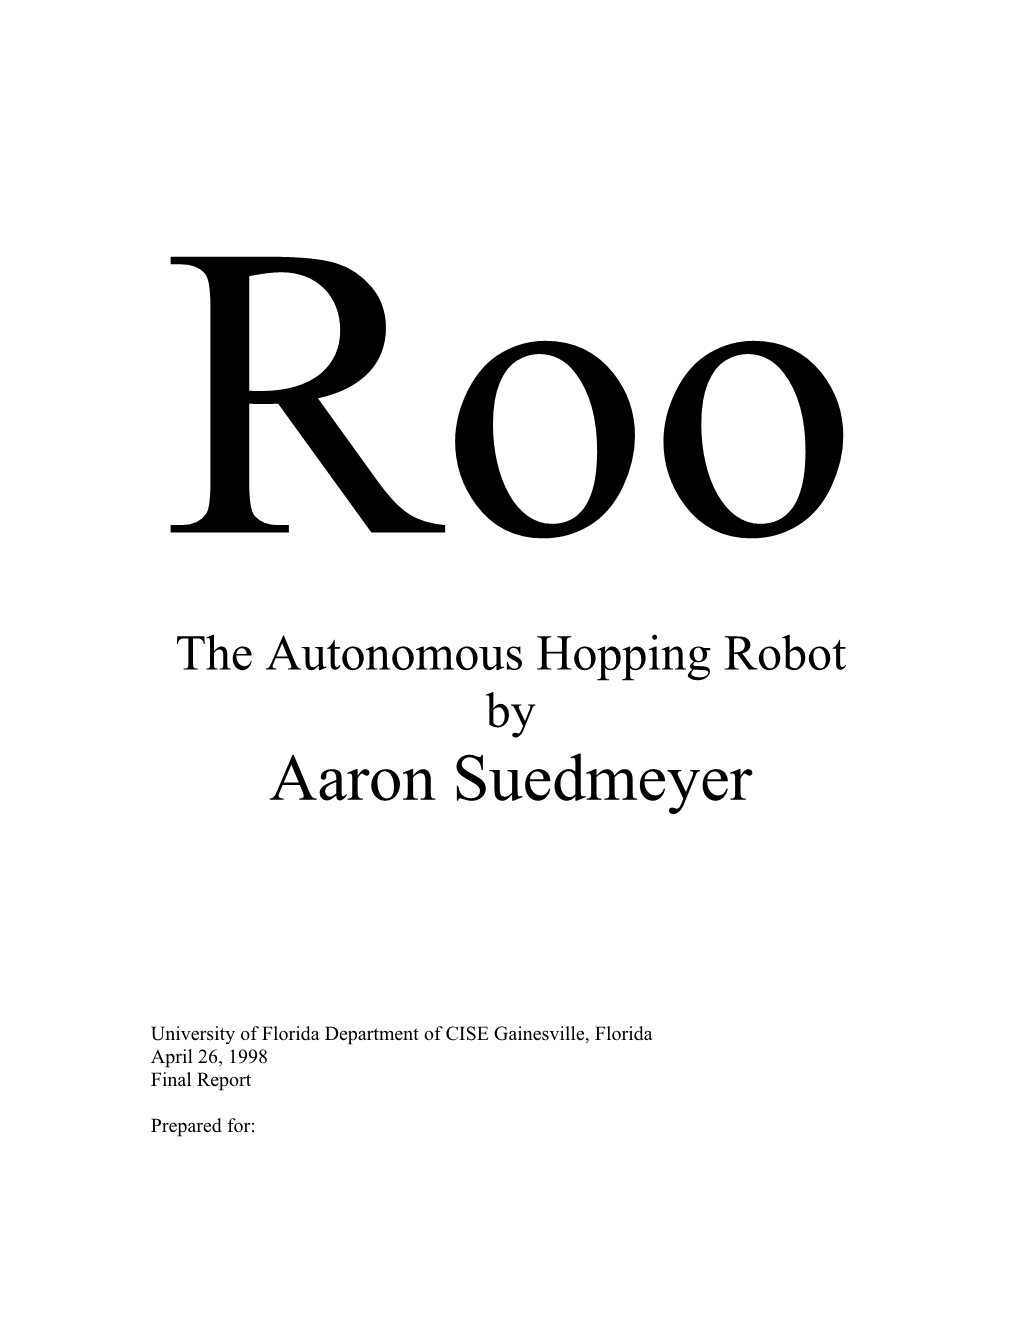 The Autonomous Hopping Robot